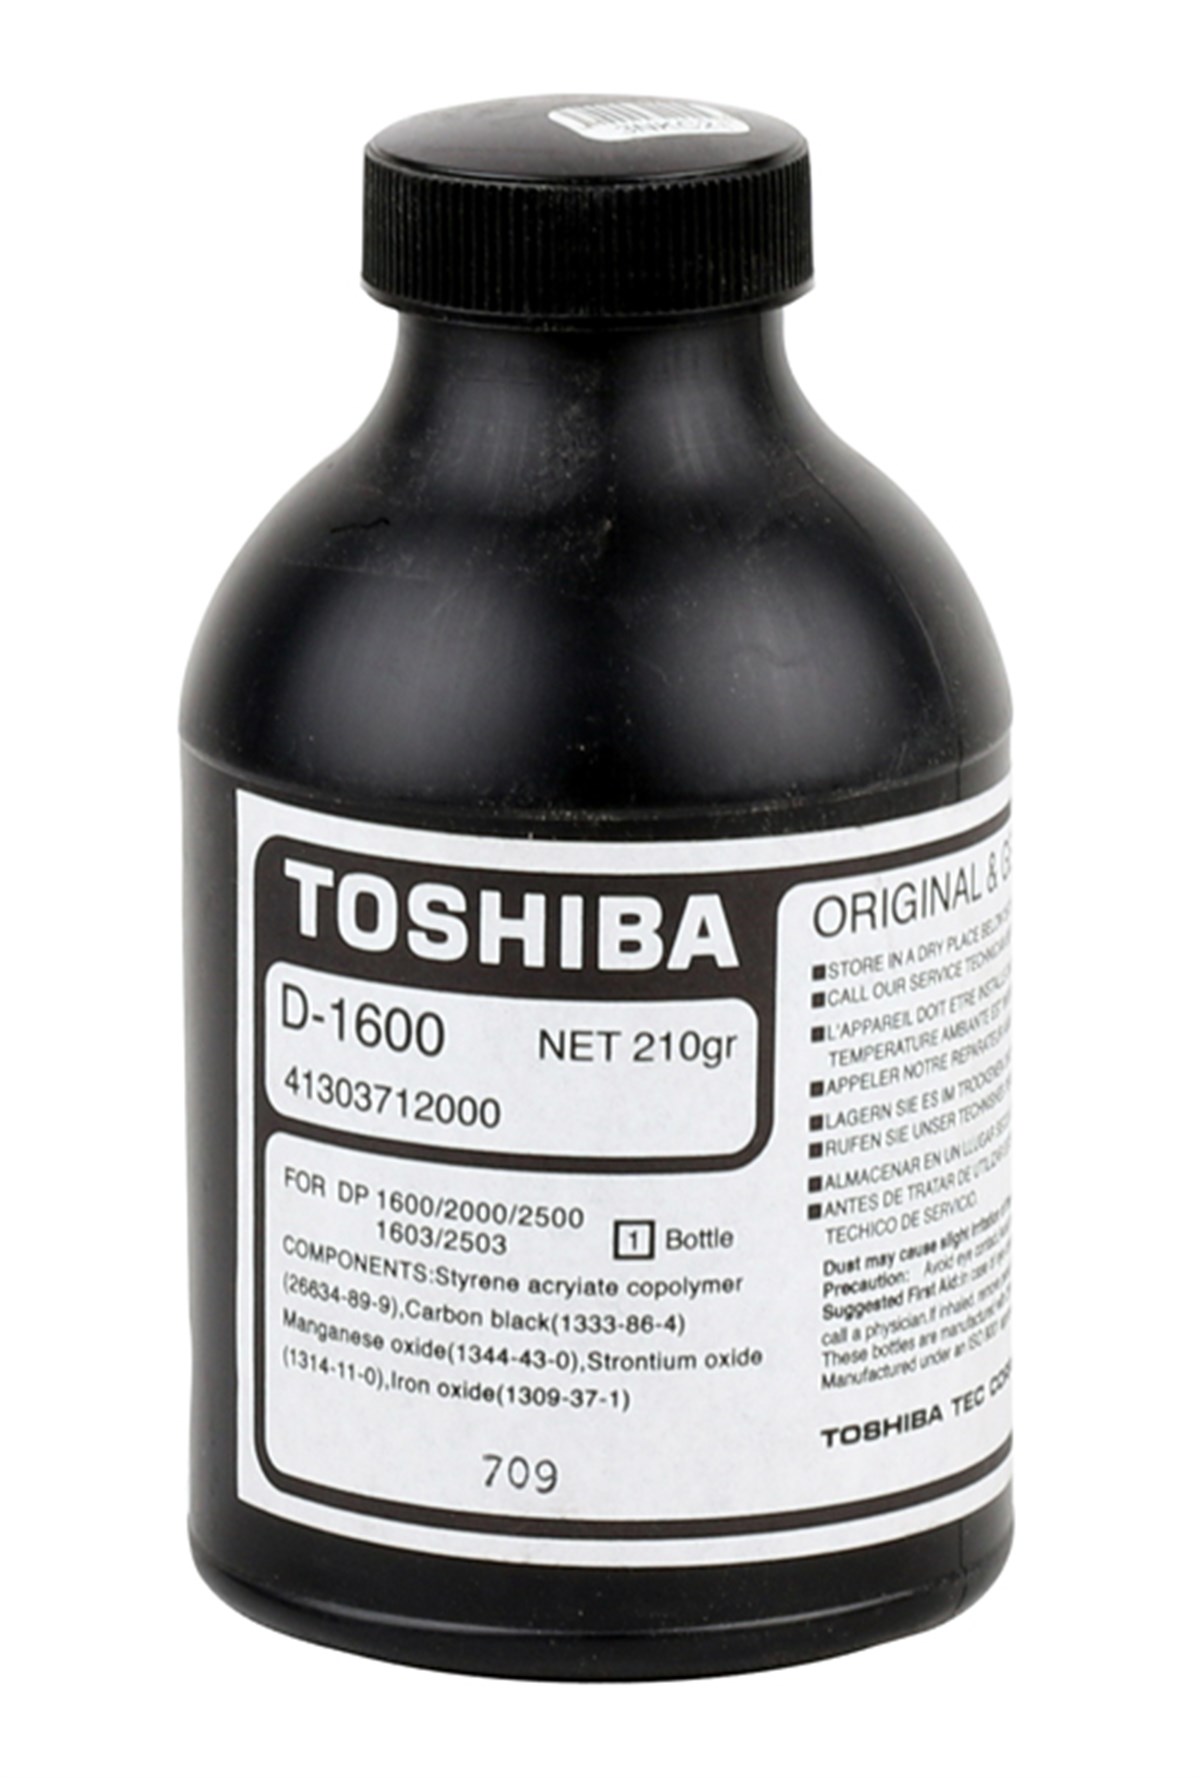 Toshiba%20D-1600%20Orjinal%20Developer%20e-studio%2016%2020%2025%20160%20200%20250%20210g